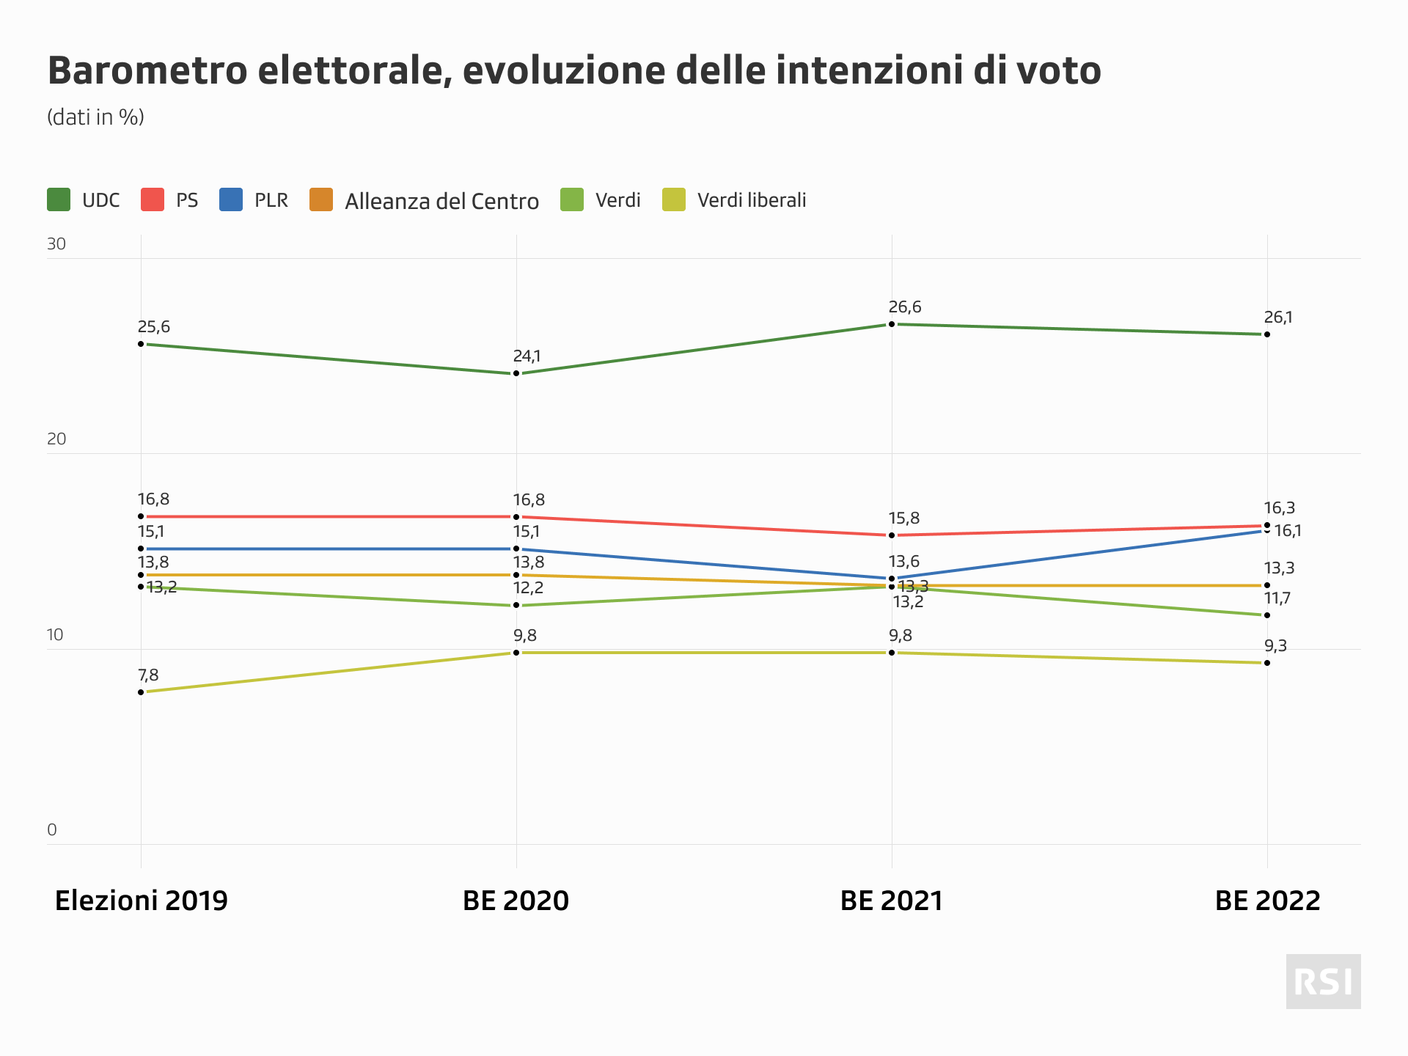 Sondaggio-barometro-elettorale-202210-evoluzione-tendenze-voto.png